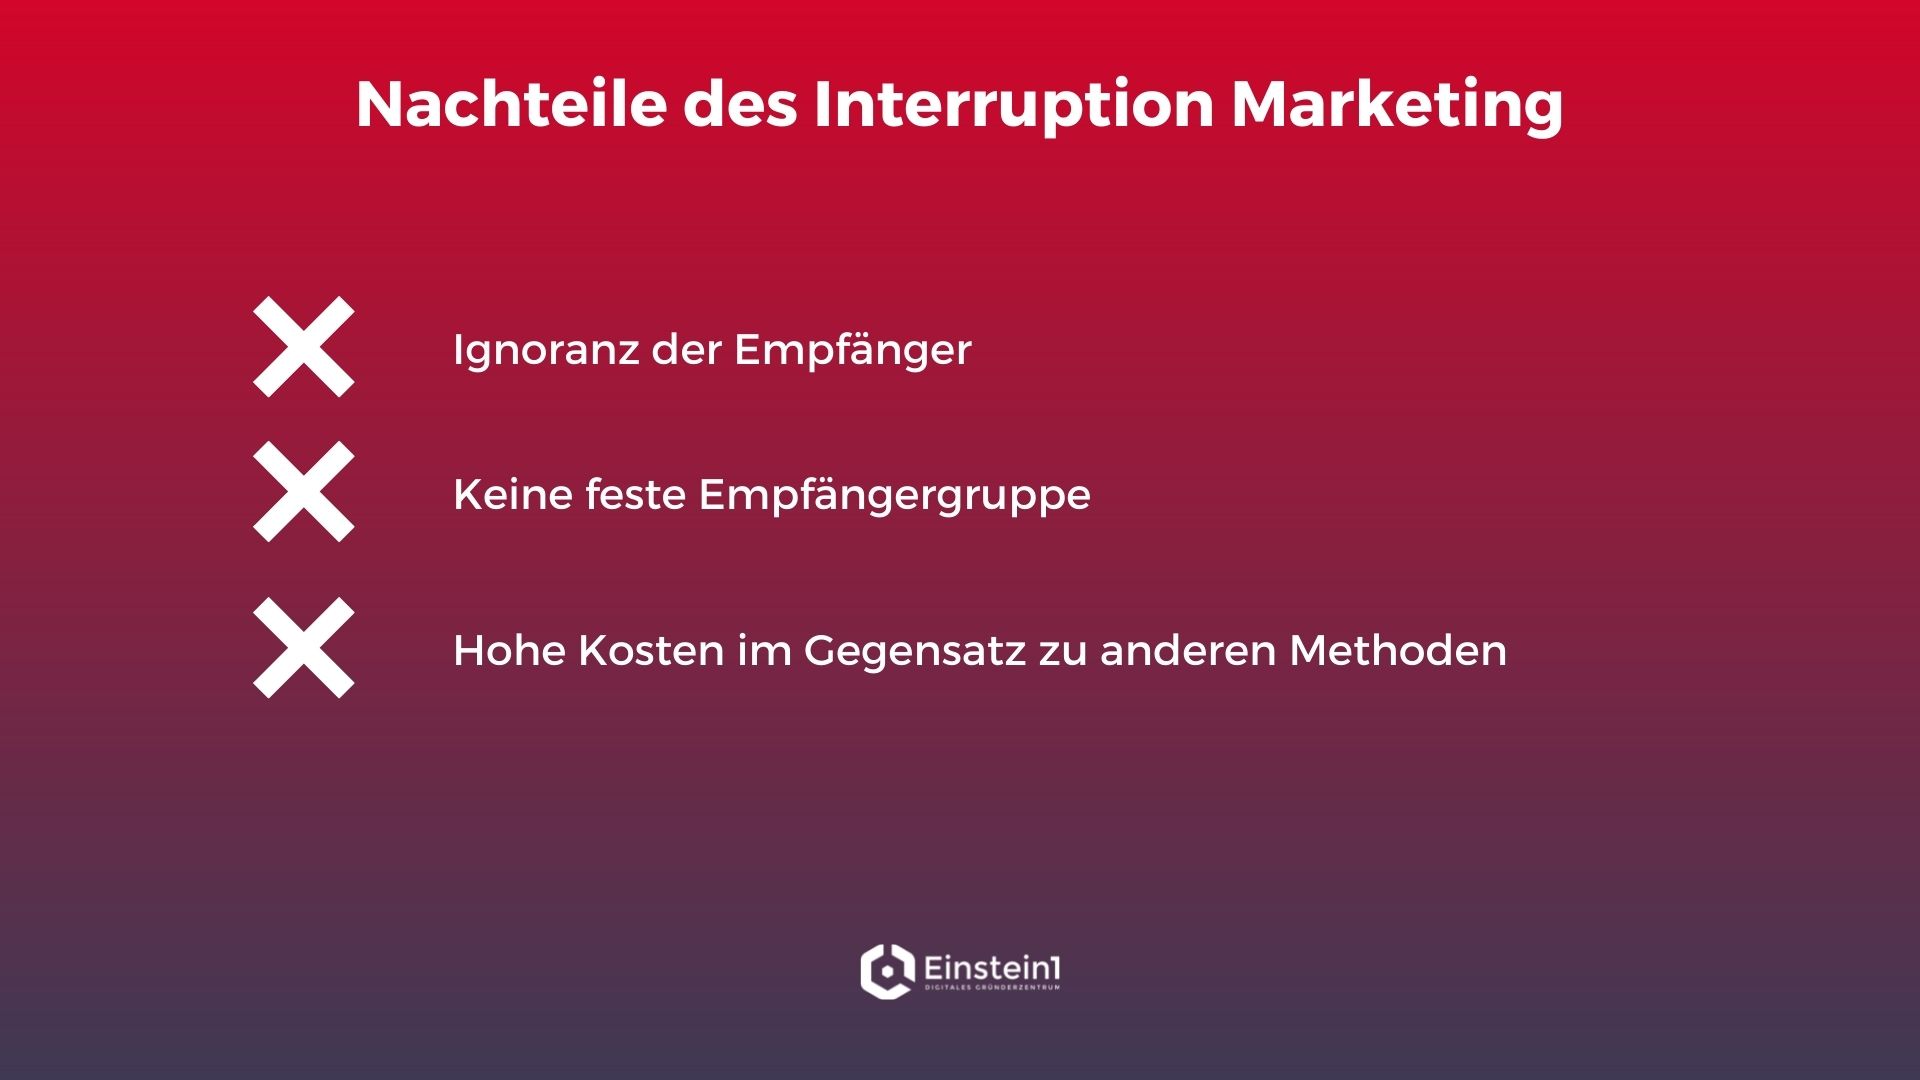 interruption-marketing-nachteile-einstein1